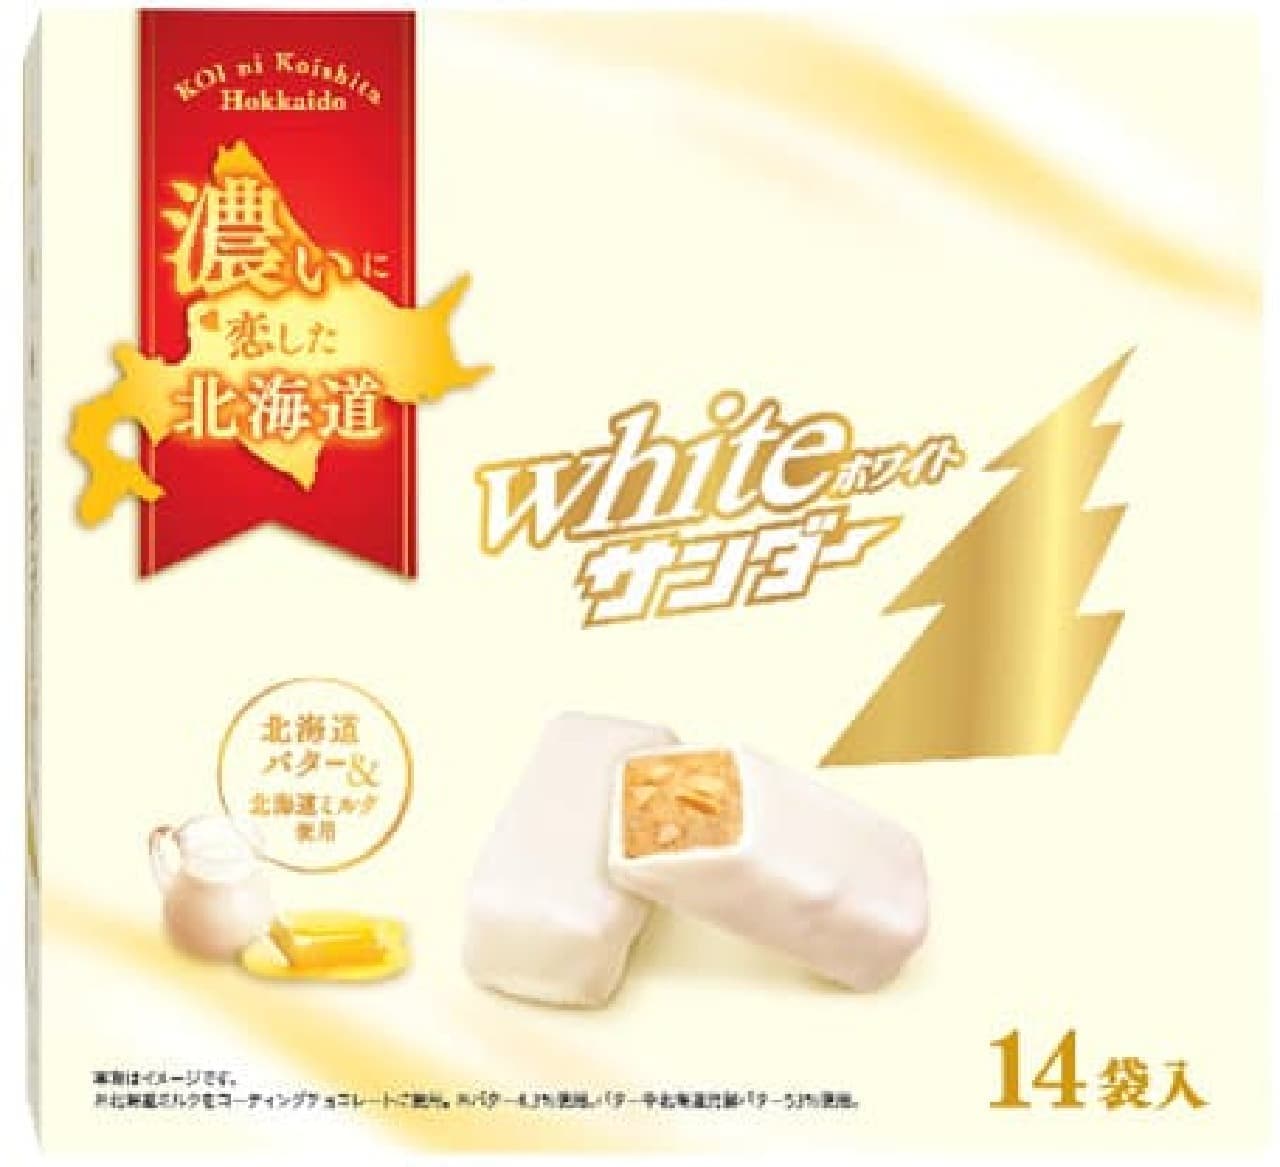 Hokkaido limited "White Thunder"